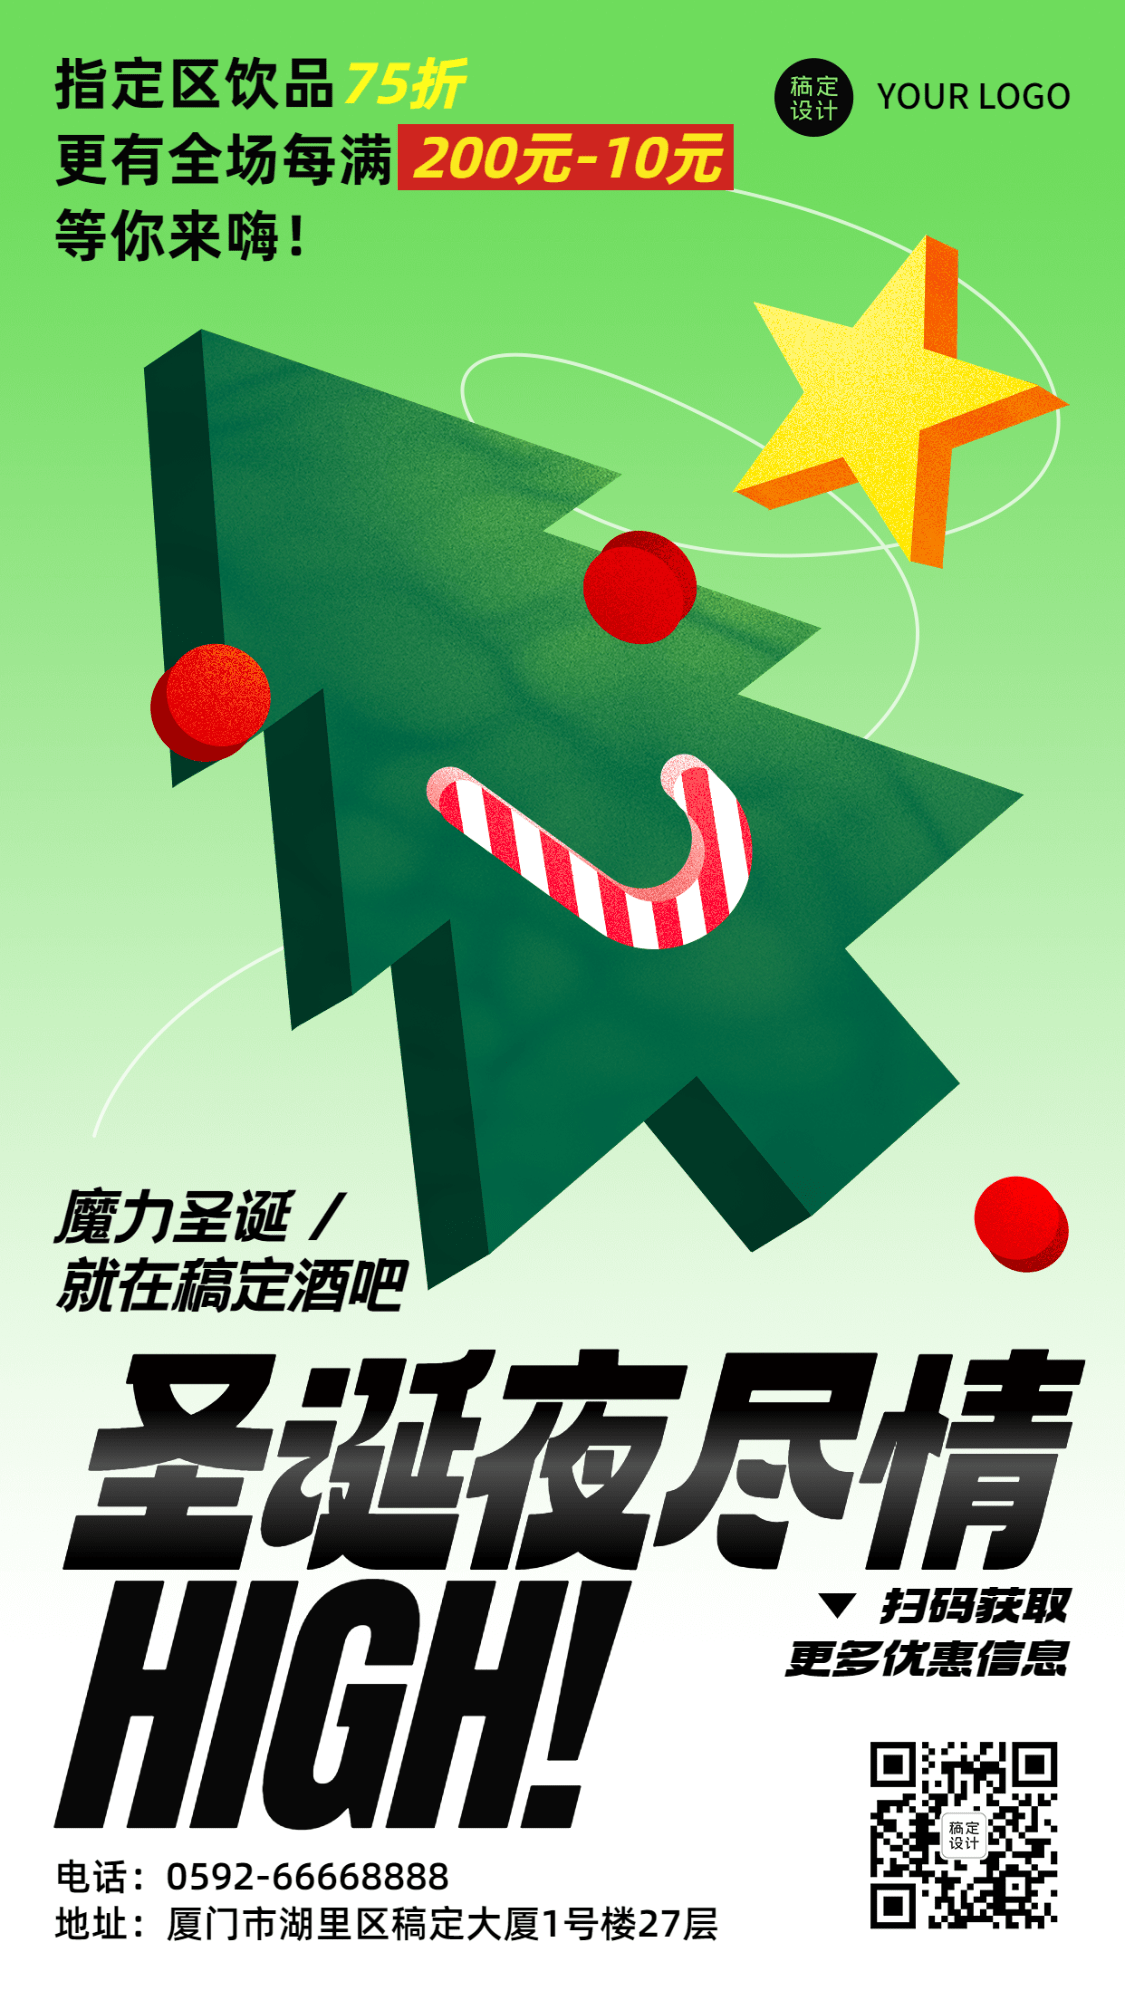 圣诞节派对活动宣传手机海报